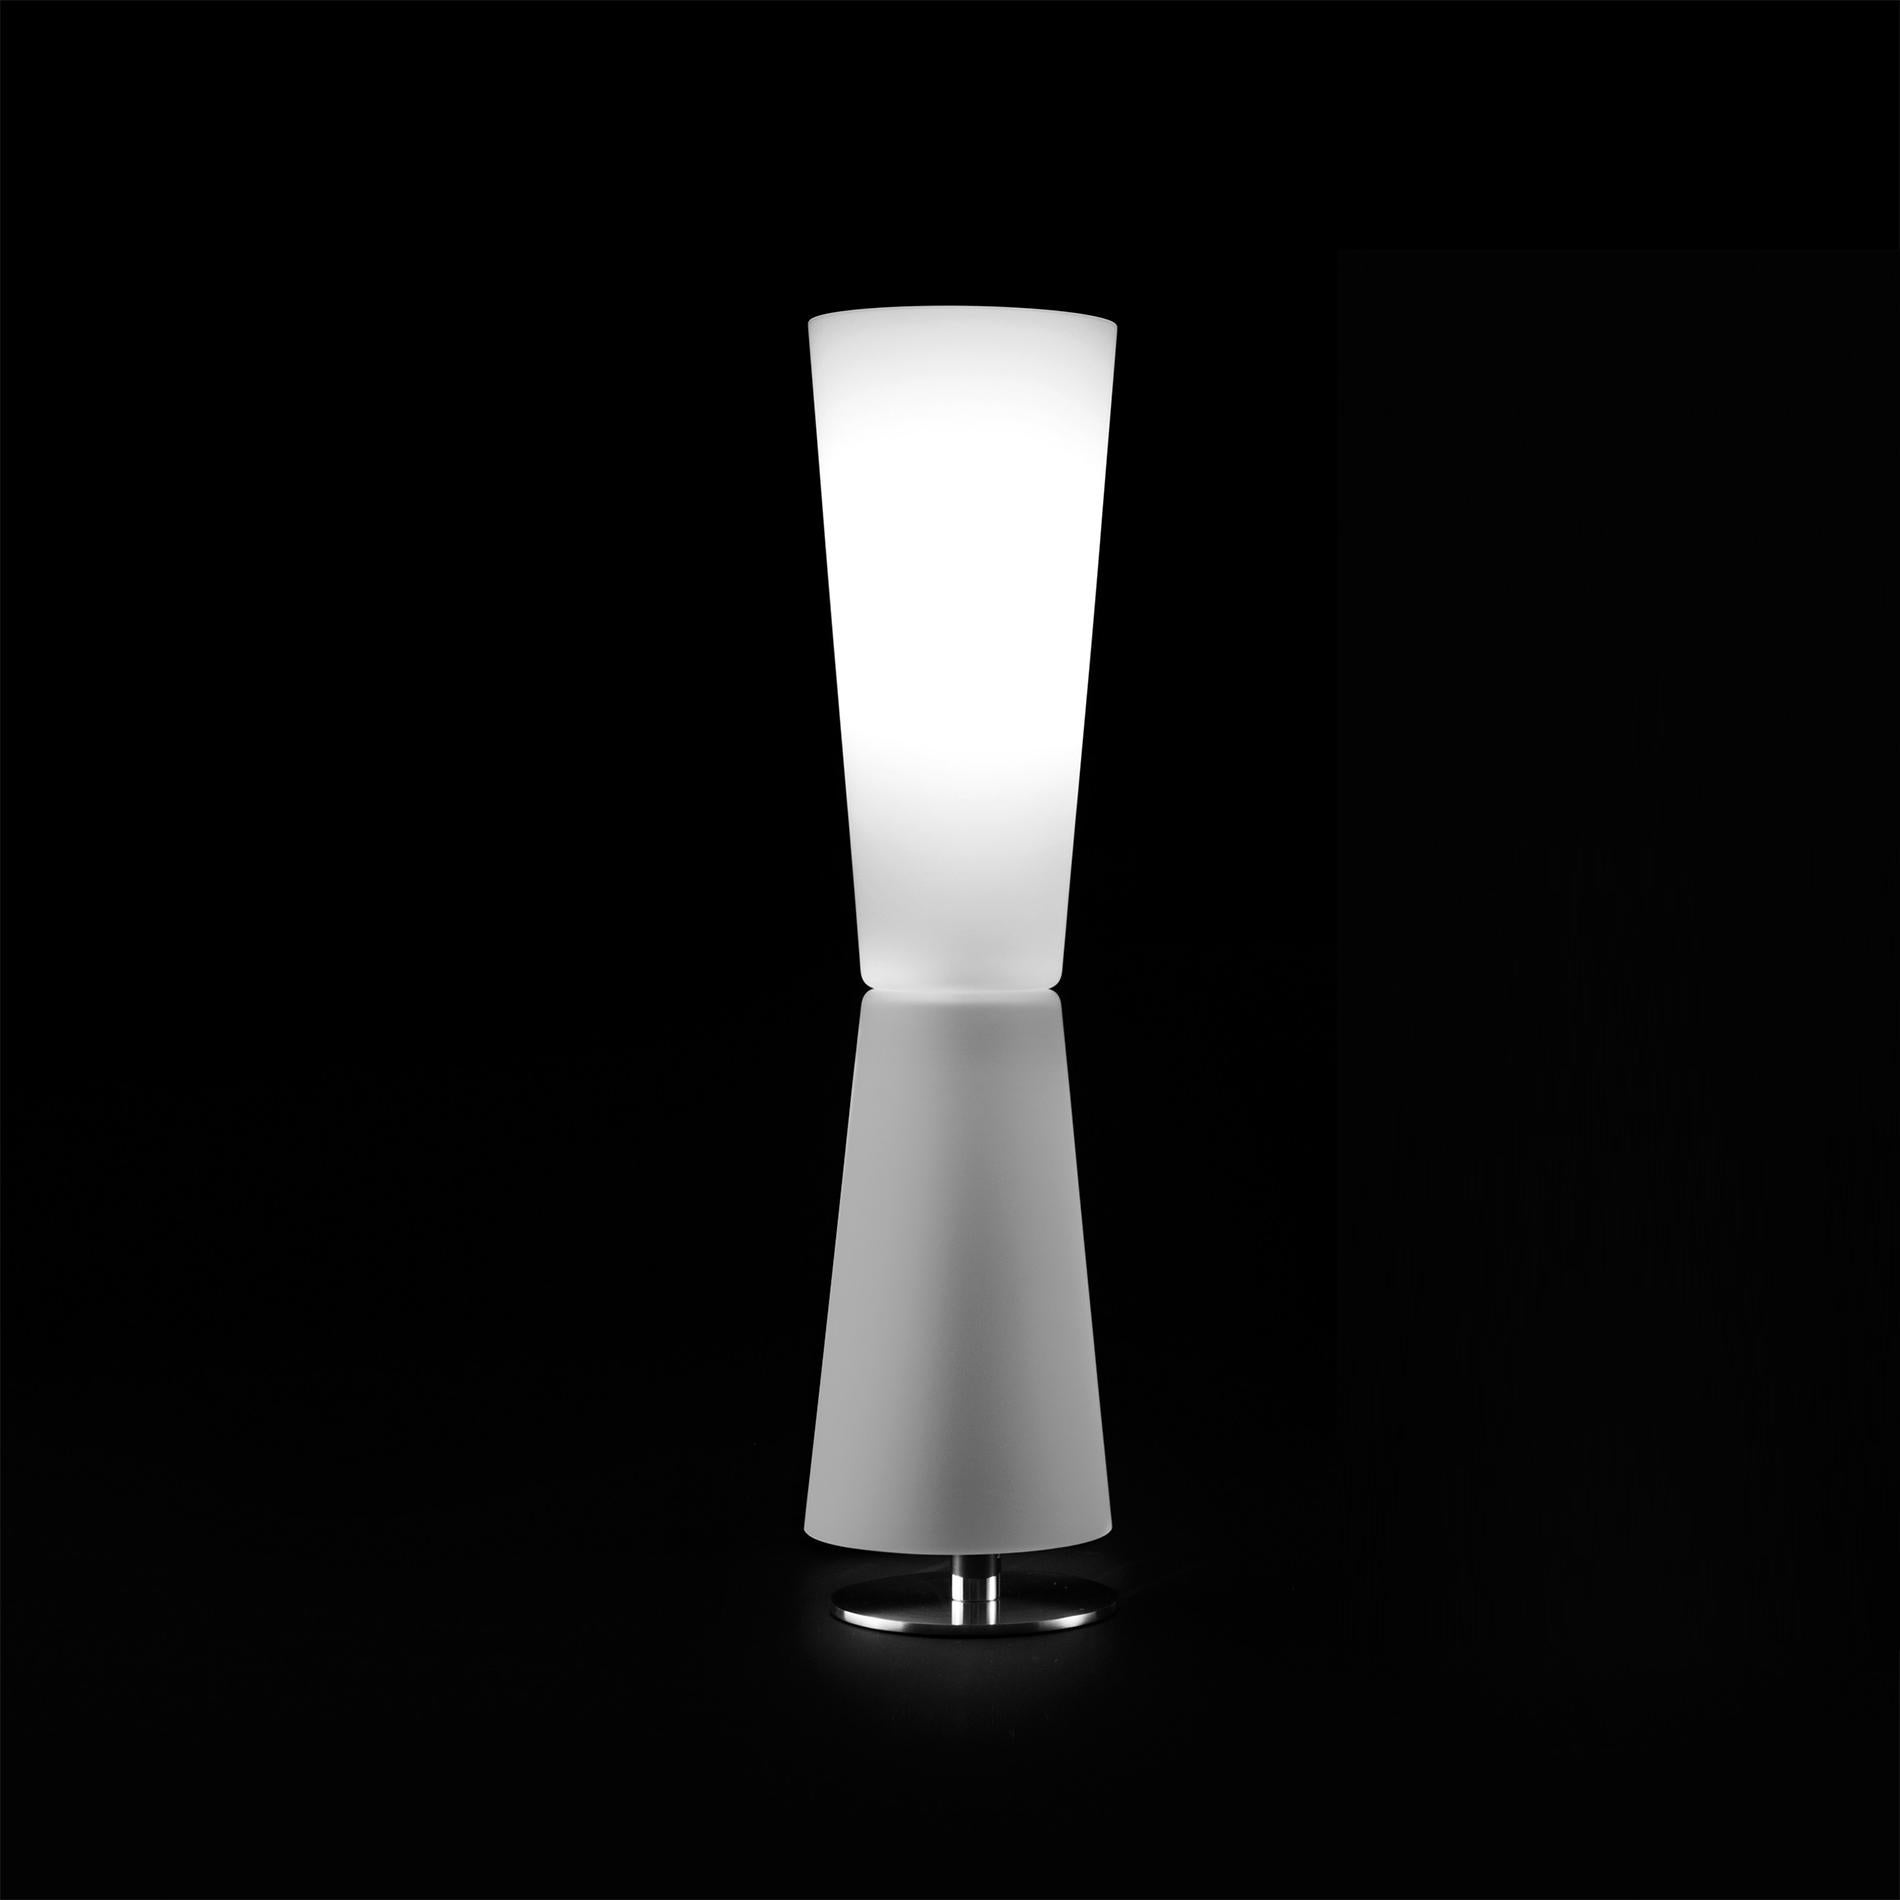 Lampe de table 'Lu-Lu' conçue par Stefano Casciani en 1966.
Fabriqué par Oluce, Italie.

Lampe théorique, dotée de la juste mesure d'abstraction géométrique requise par l'objet pour conserver sa courtoisie. Les géométries choisies par Stefano